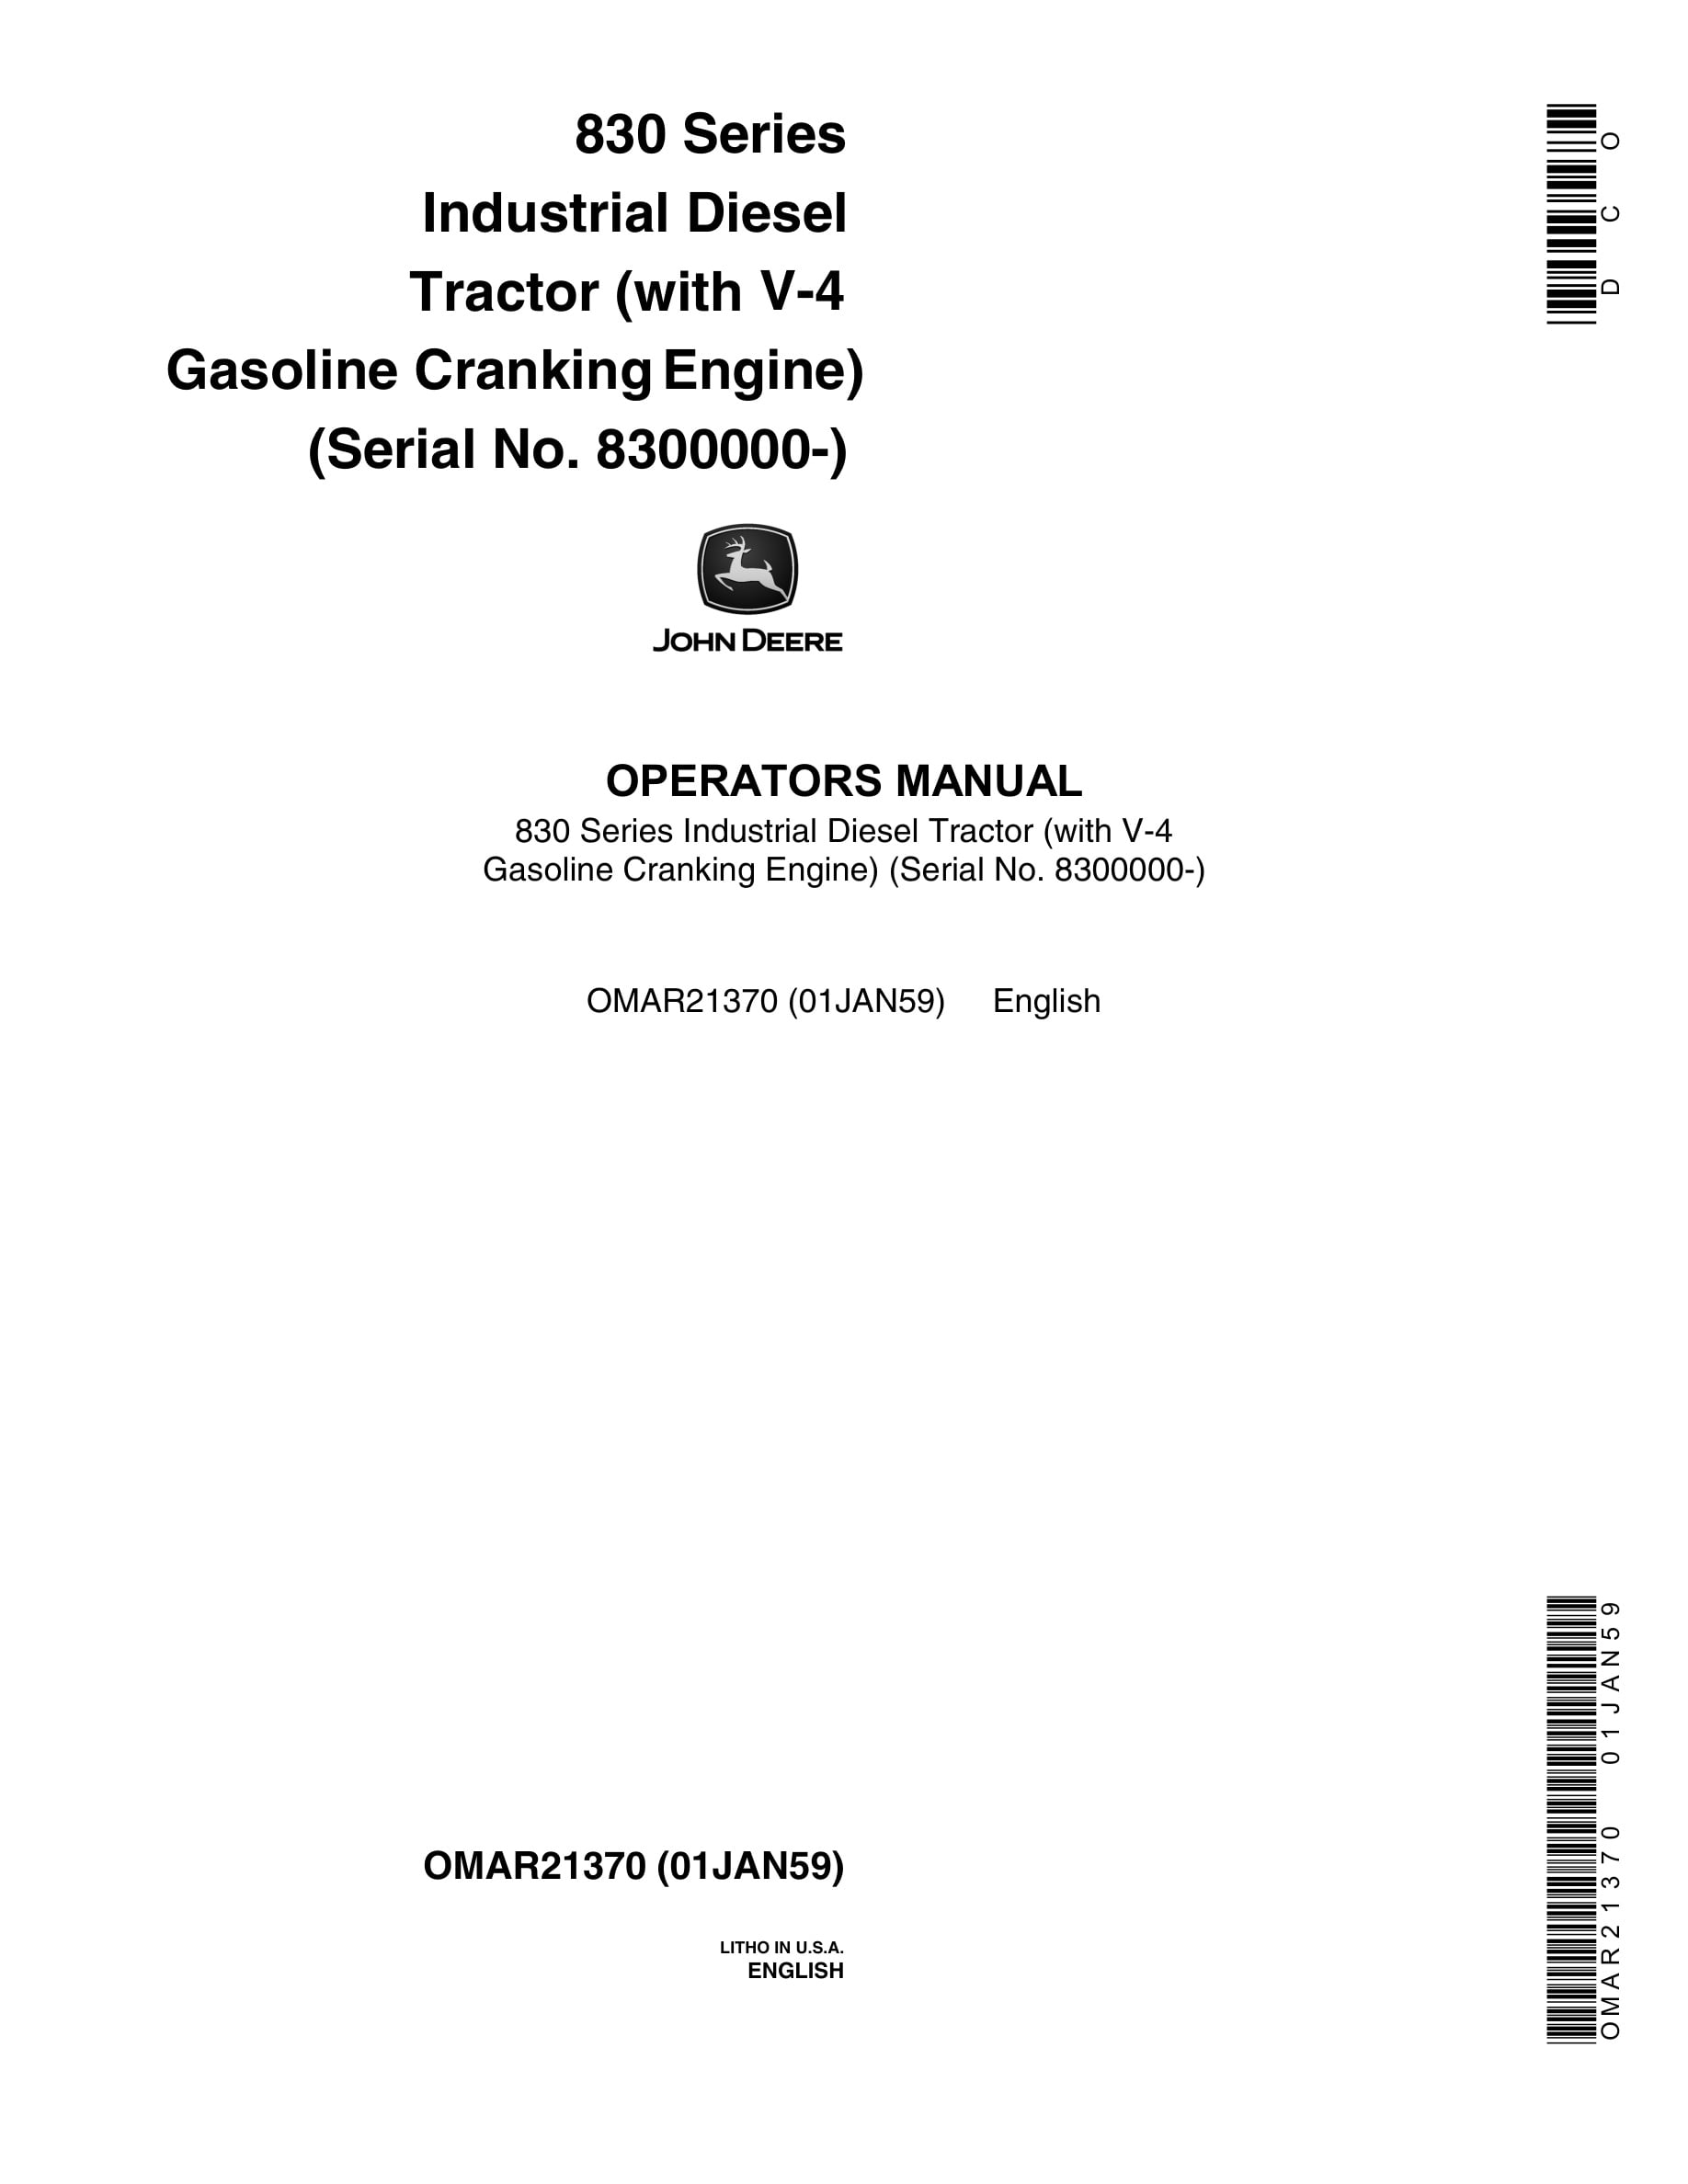 John Deere 830 Series Tractor Operator Manual OMAR21370-1